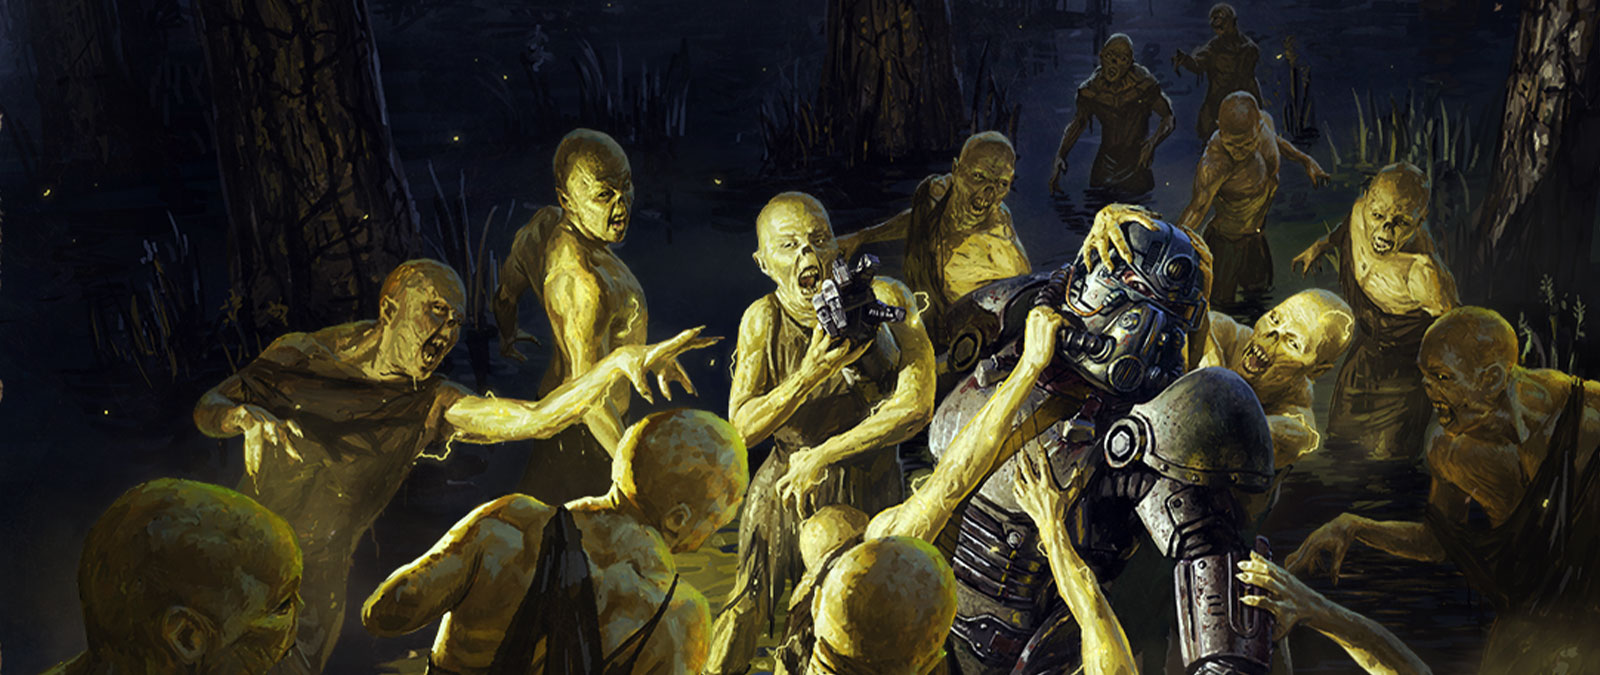 Une foule de mutants submerge un humain portant une armure de puissance.